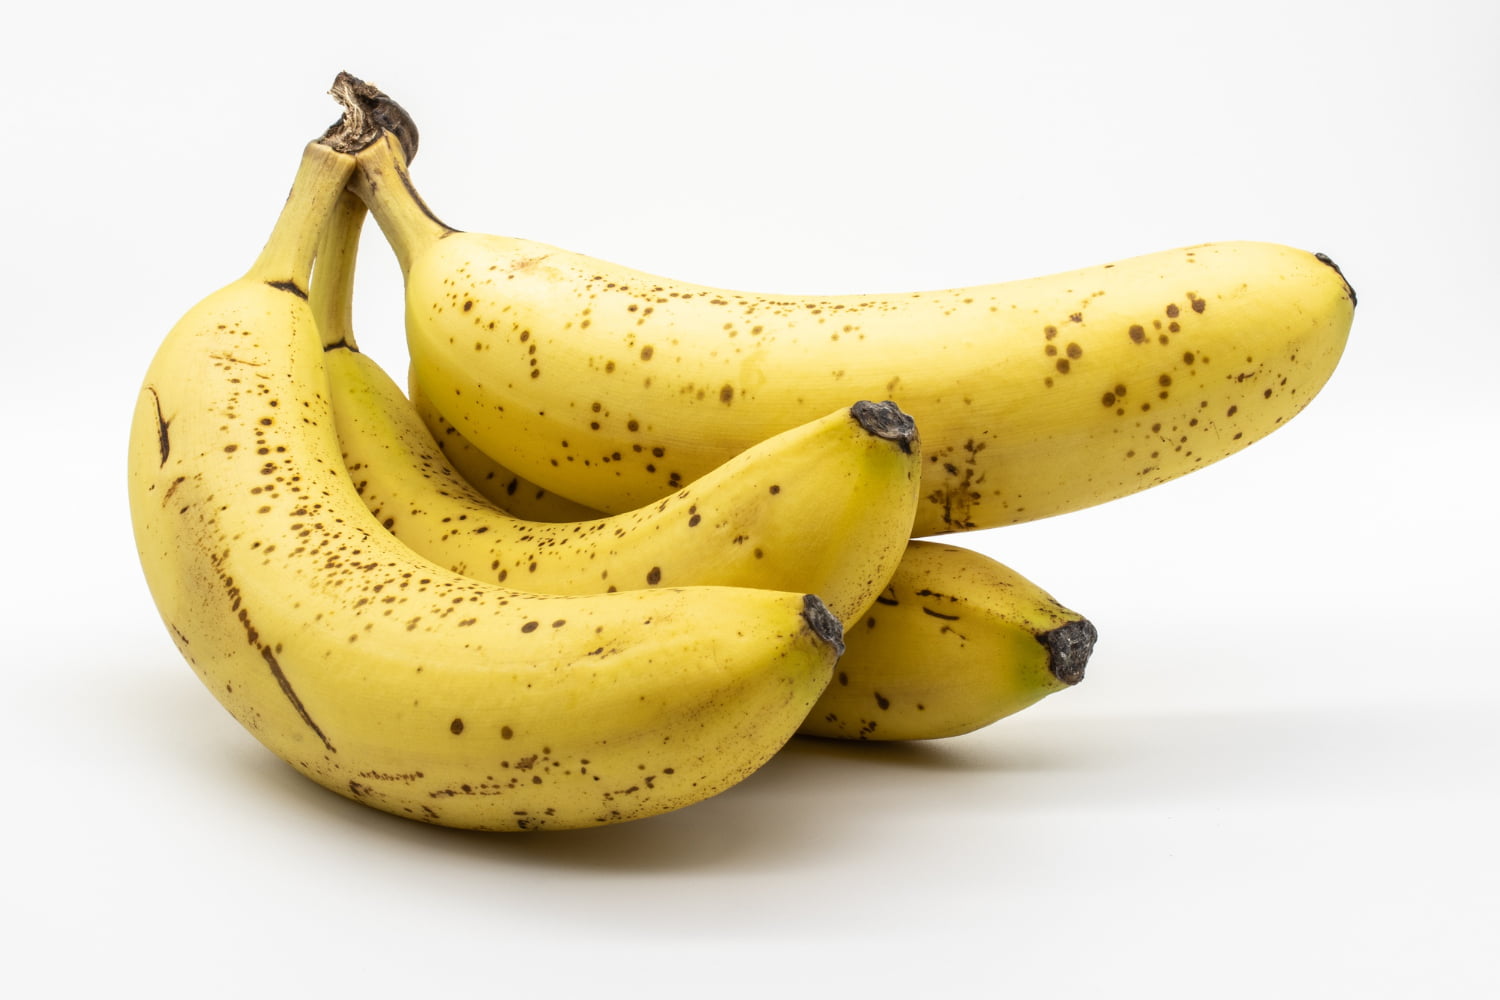 La verdad detrás de las manchas negras en los plátanos ¿Qué significan realmente?